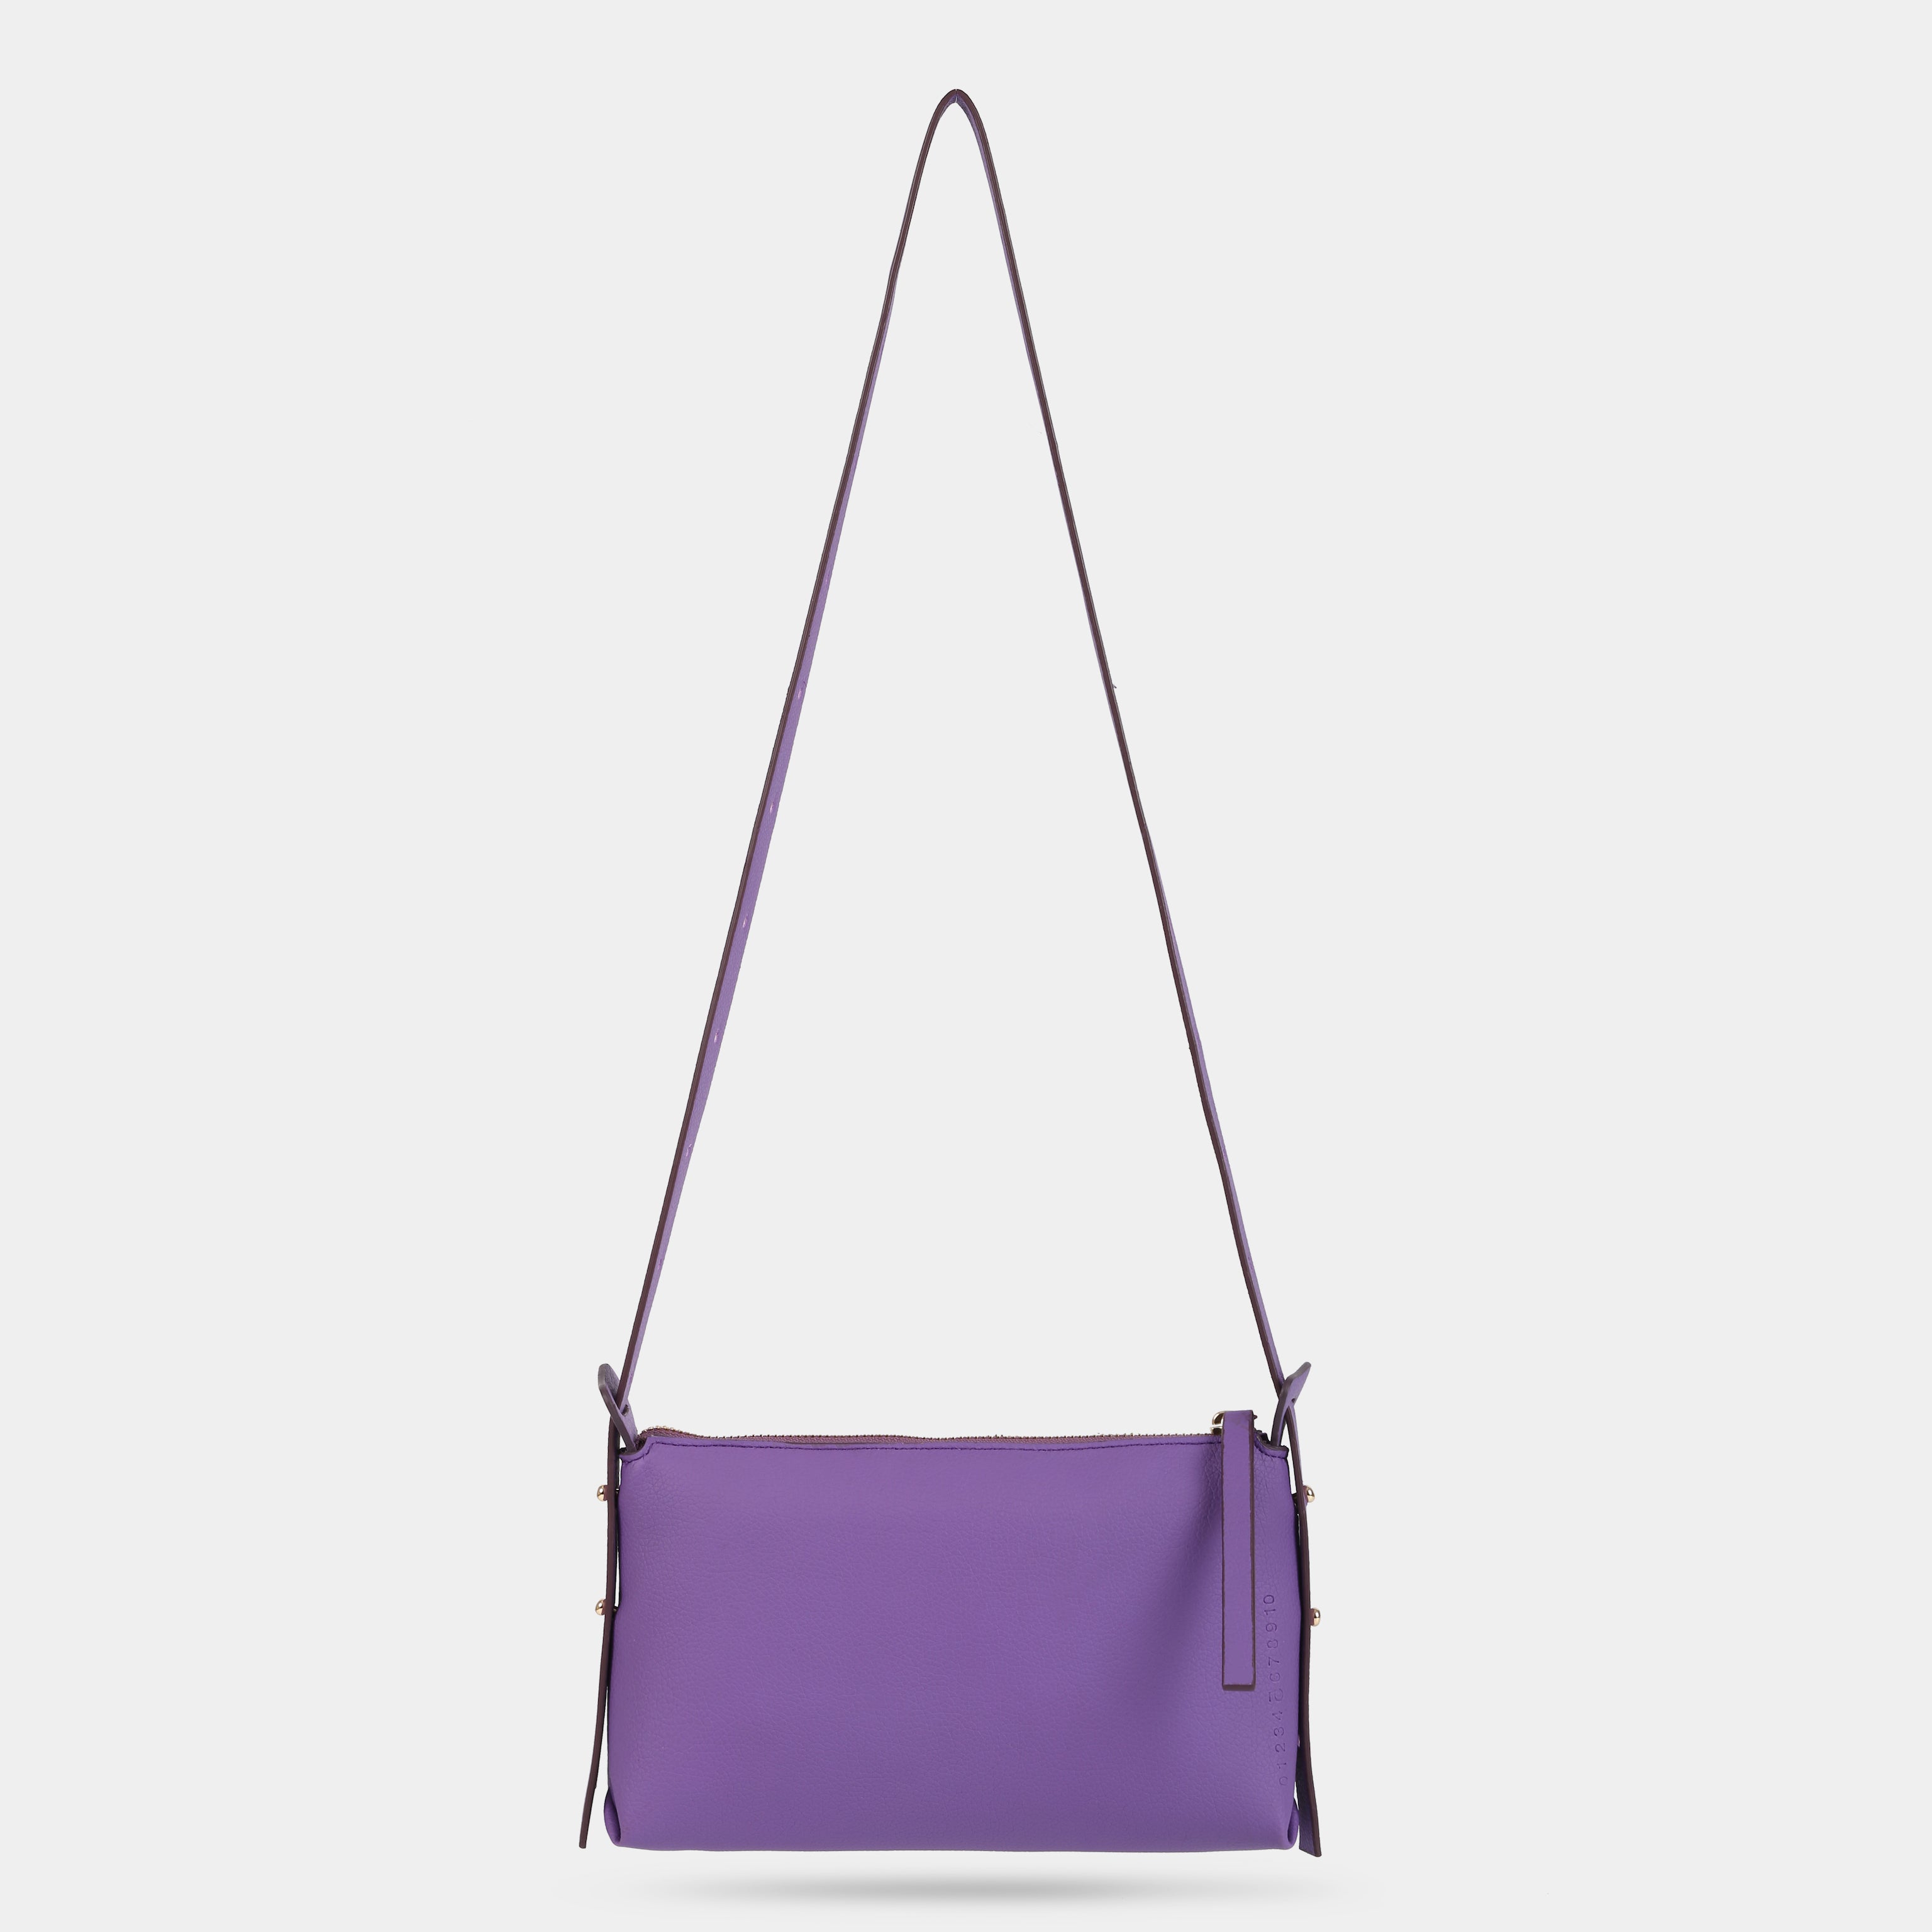 Blue M BAG handbag (small)